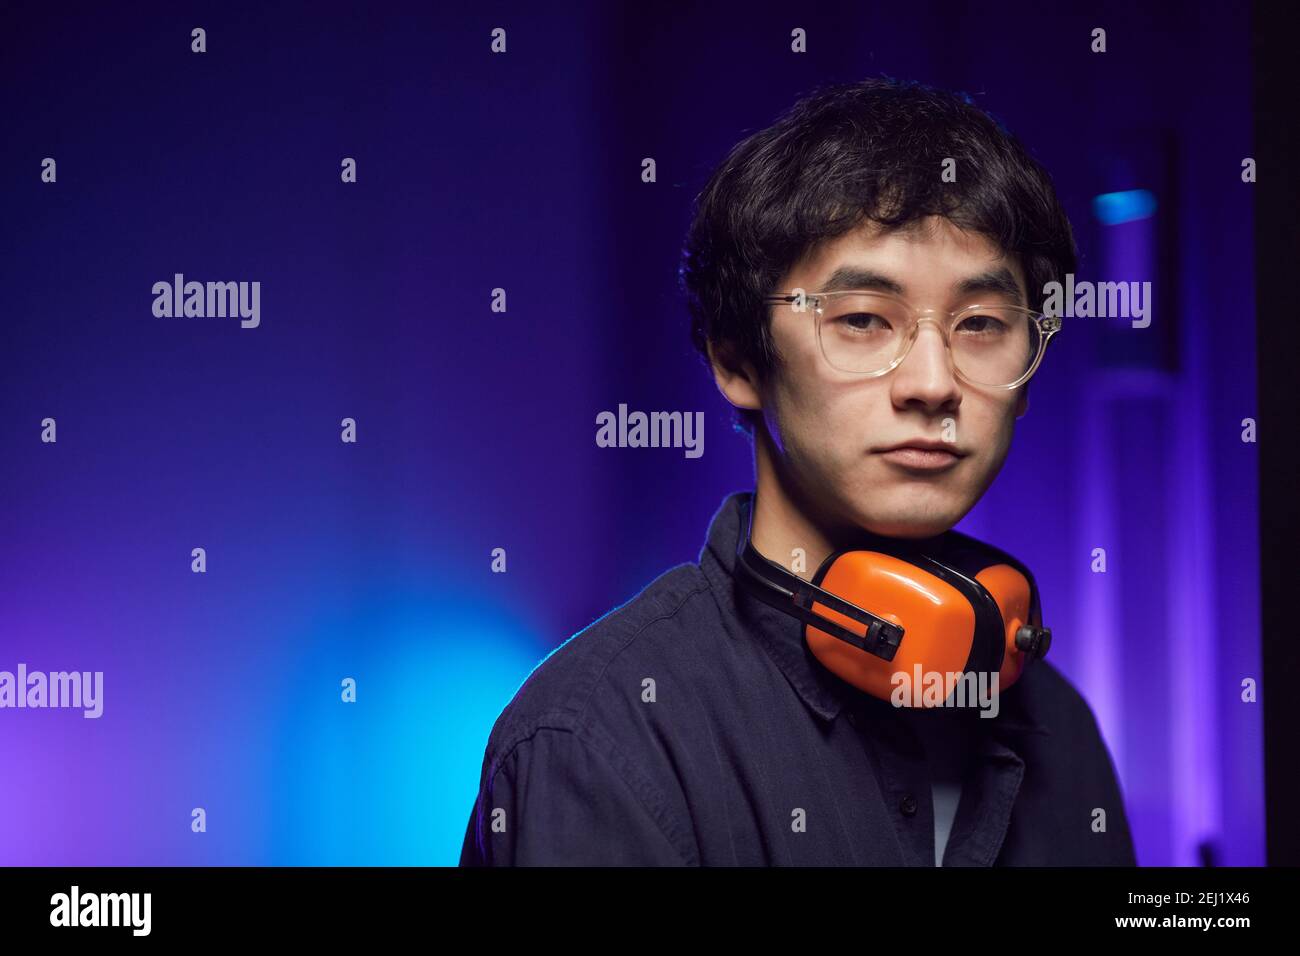 Ritratto di un giovane asiatico che indossa le cuffie guardando la fotocamera mentre si trova in un futuristico interno illuminato da luce blu, spazio copia Foto Stock